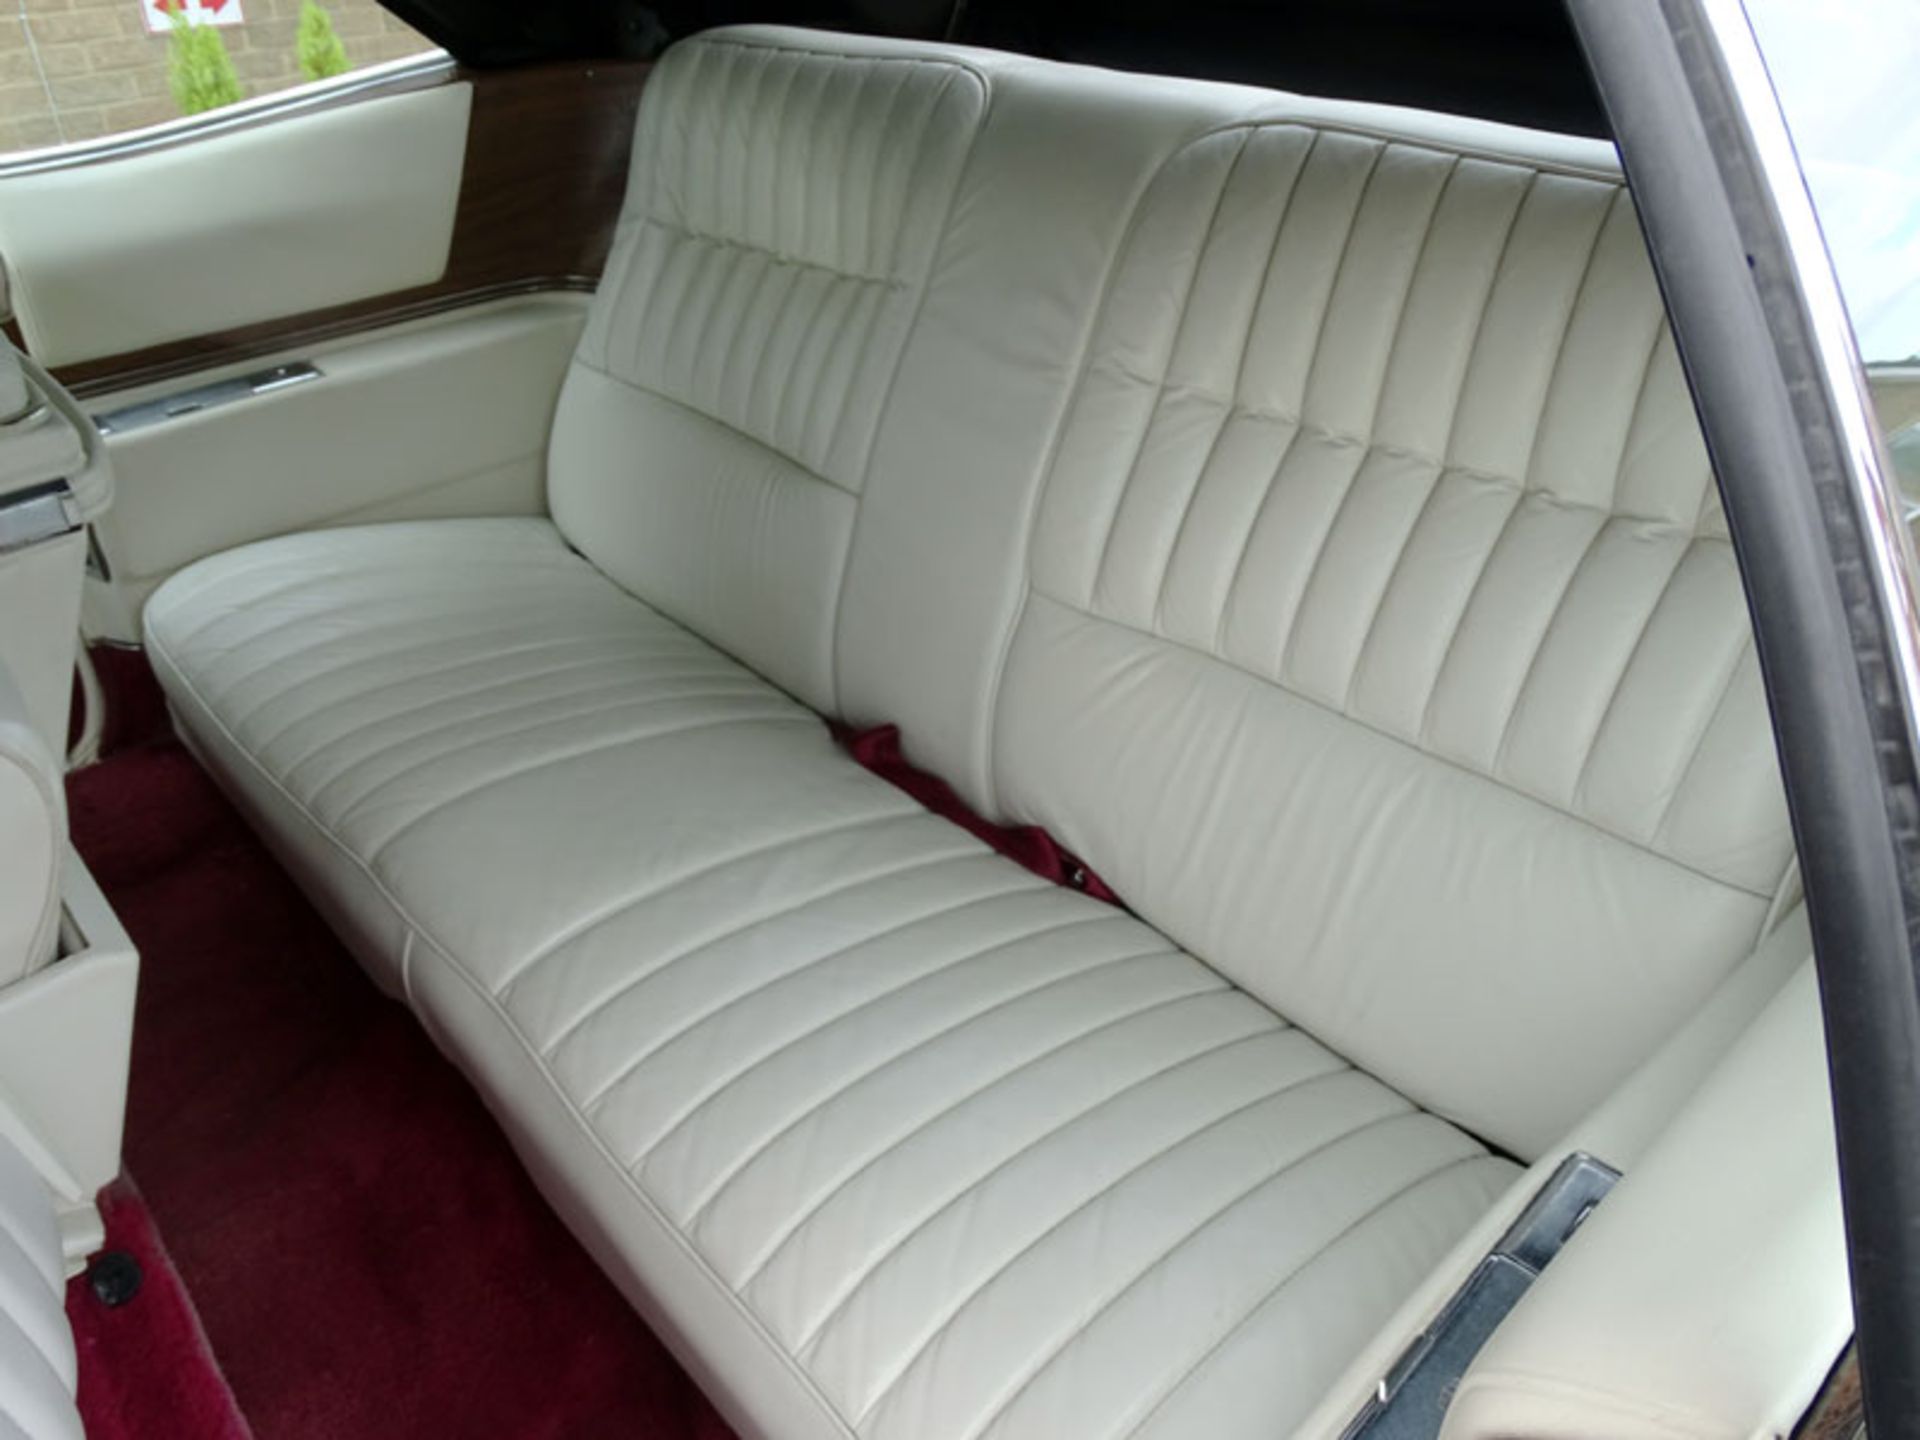 1974 Cadillac Eldorado Convertible - Image 5 of 6